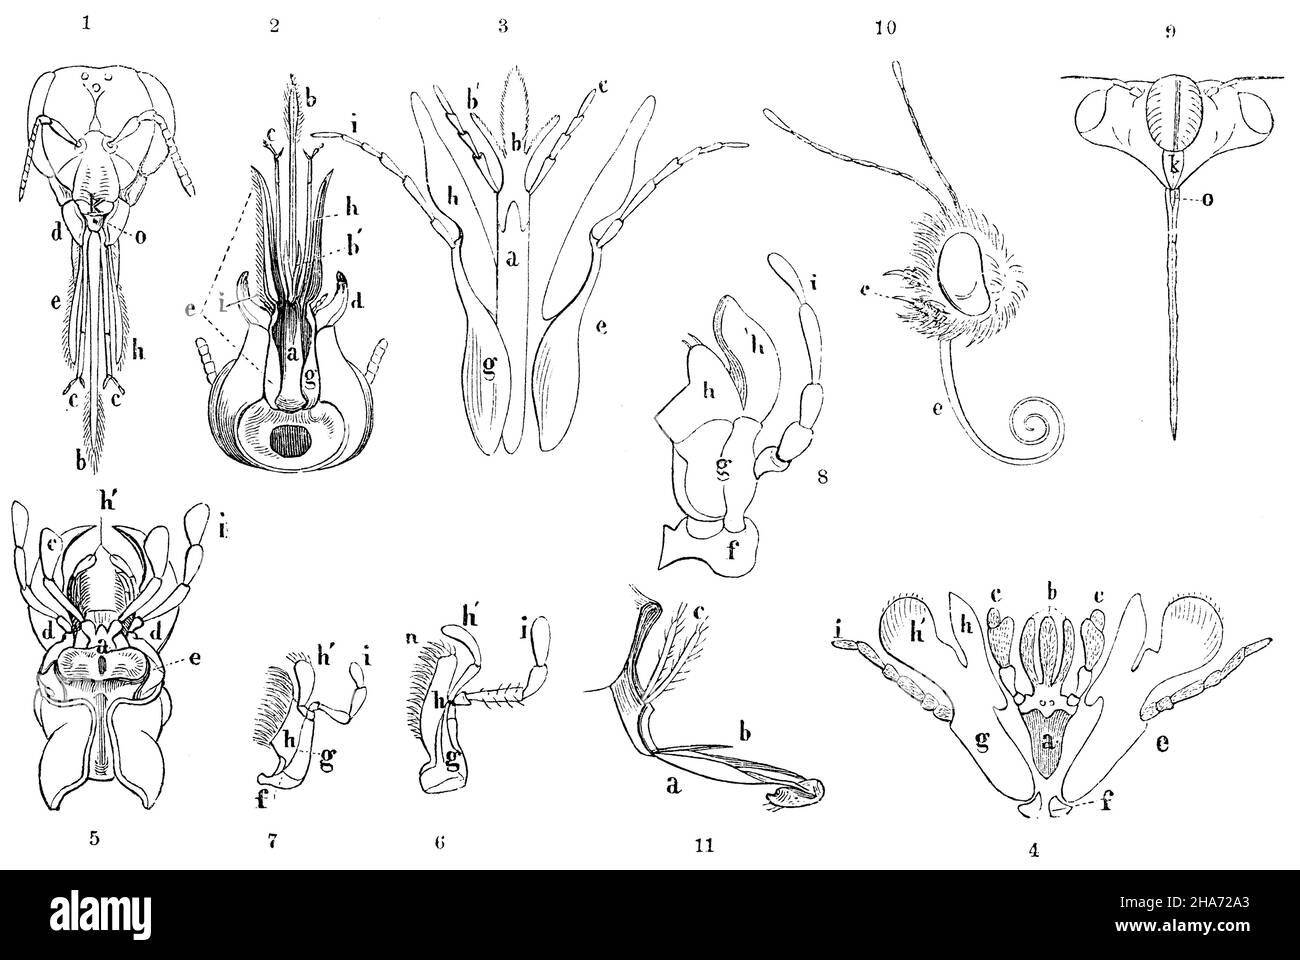 Ape del miele: Testa dalla parte anteriore (1); bumblebee macinato dalla parte inferiore (2); Andrena labialis (3); Cimbex variabilis (4); testa di Procrustes coriaceus dalla parte inferiore (5); metà mandibolare destra di Cicindela campestris (6); metà mandibolare destra di Staphylinus olens (7): Metà mandibolare destra di Locbisima (8); metà mandissimolare destra di Locbisima Testa di Tettigonia orni di fronte (9); testa della farfalla del giorno (11); proboscis di Tachina grossa (11): (A) mento, (b) lingua, (b') lingue accessorie, (c) palpi labiali; tutti e tre costituiscono il labbro inferiore, (d) guance del mento (mandiboli), (e) maxillae (maxillae) (maxillae) (composti dei seguenti pezzi): Foto Stock